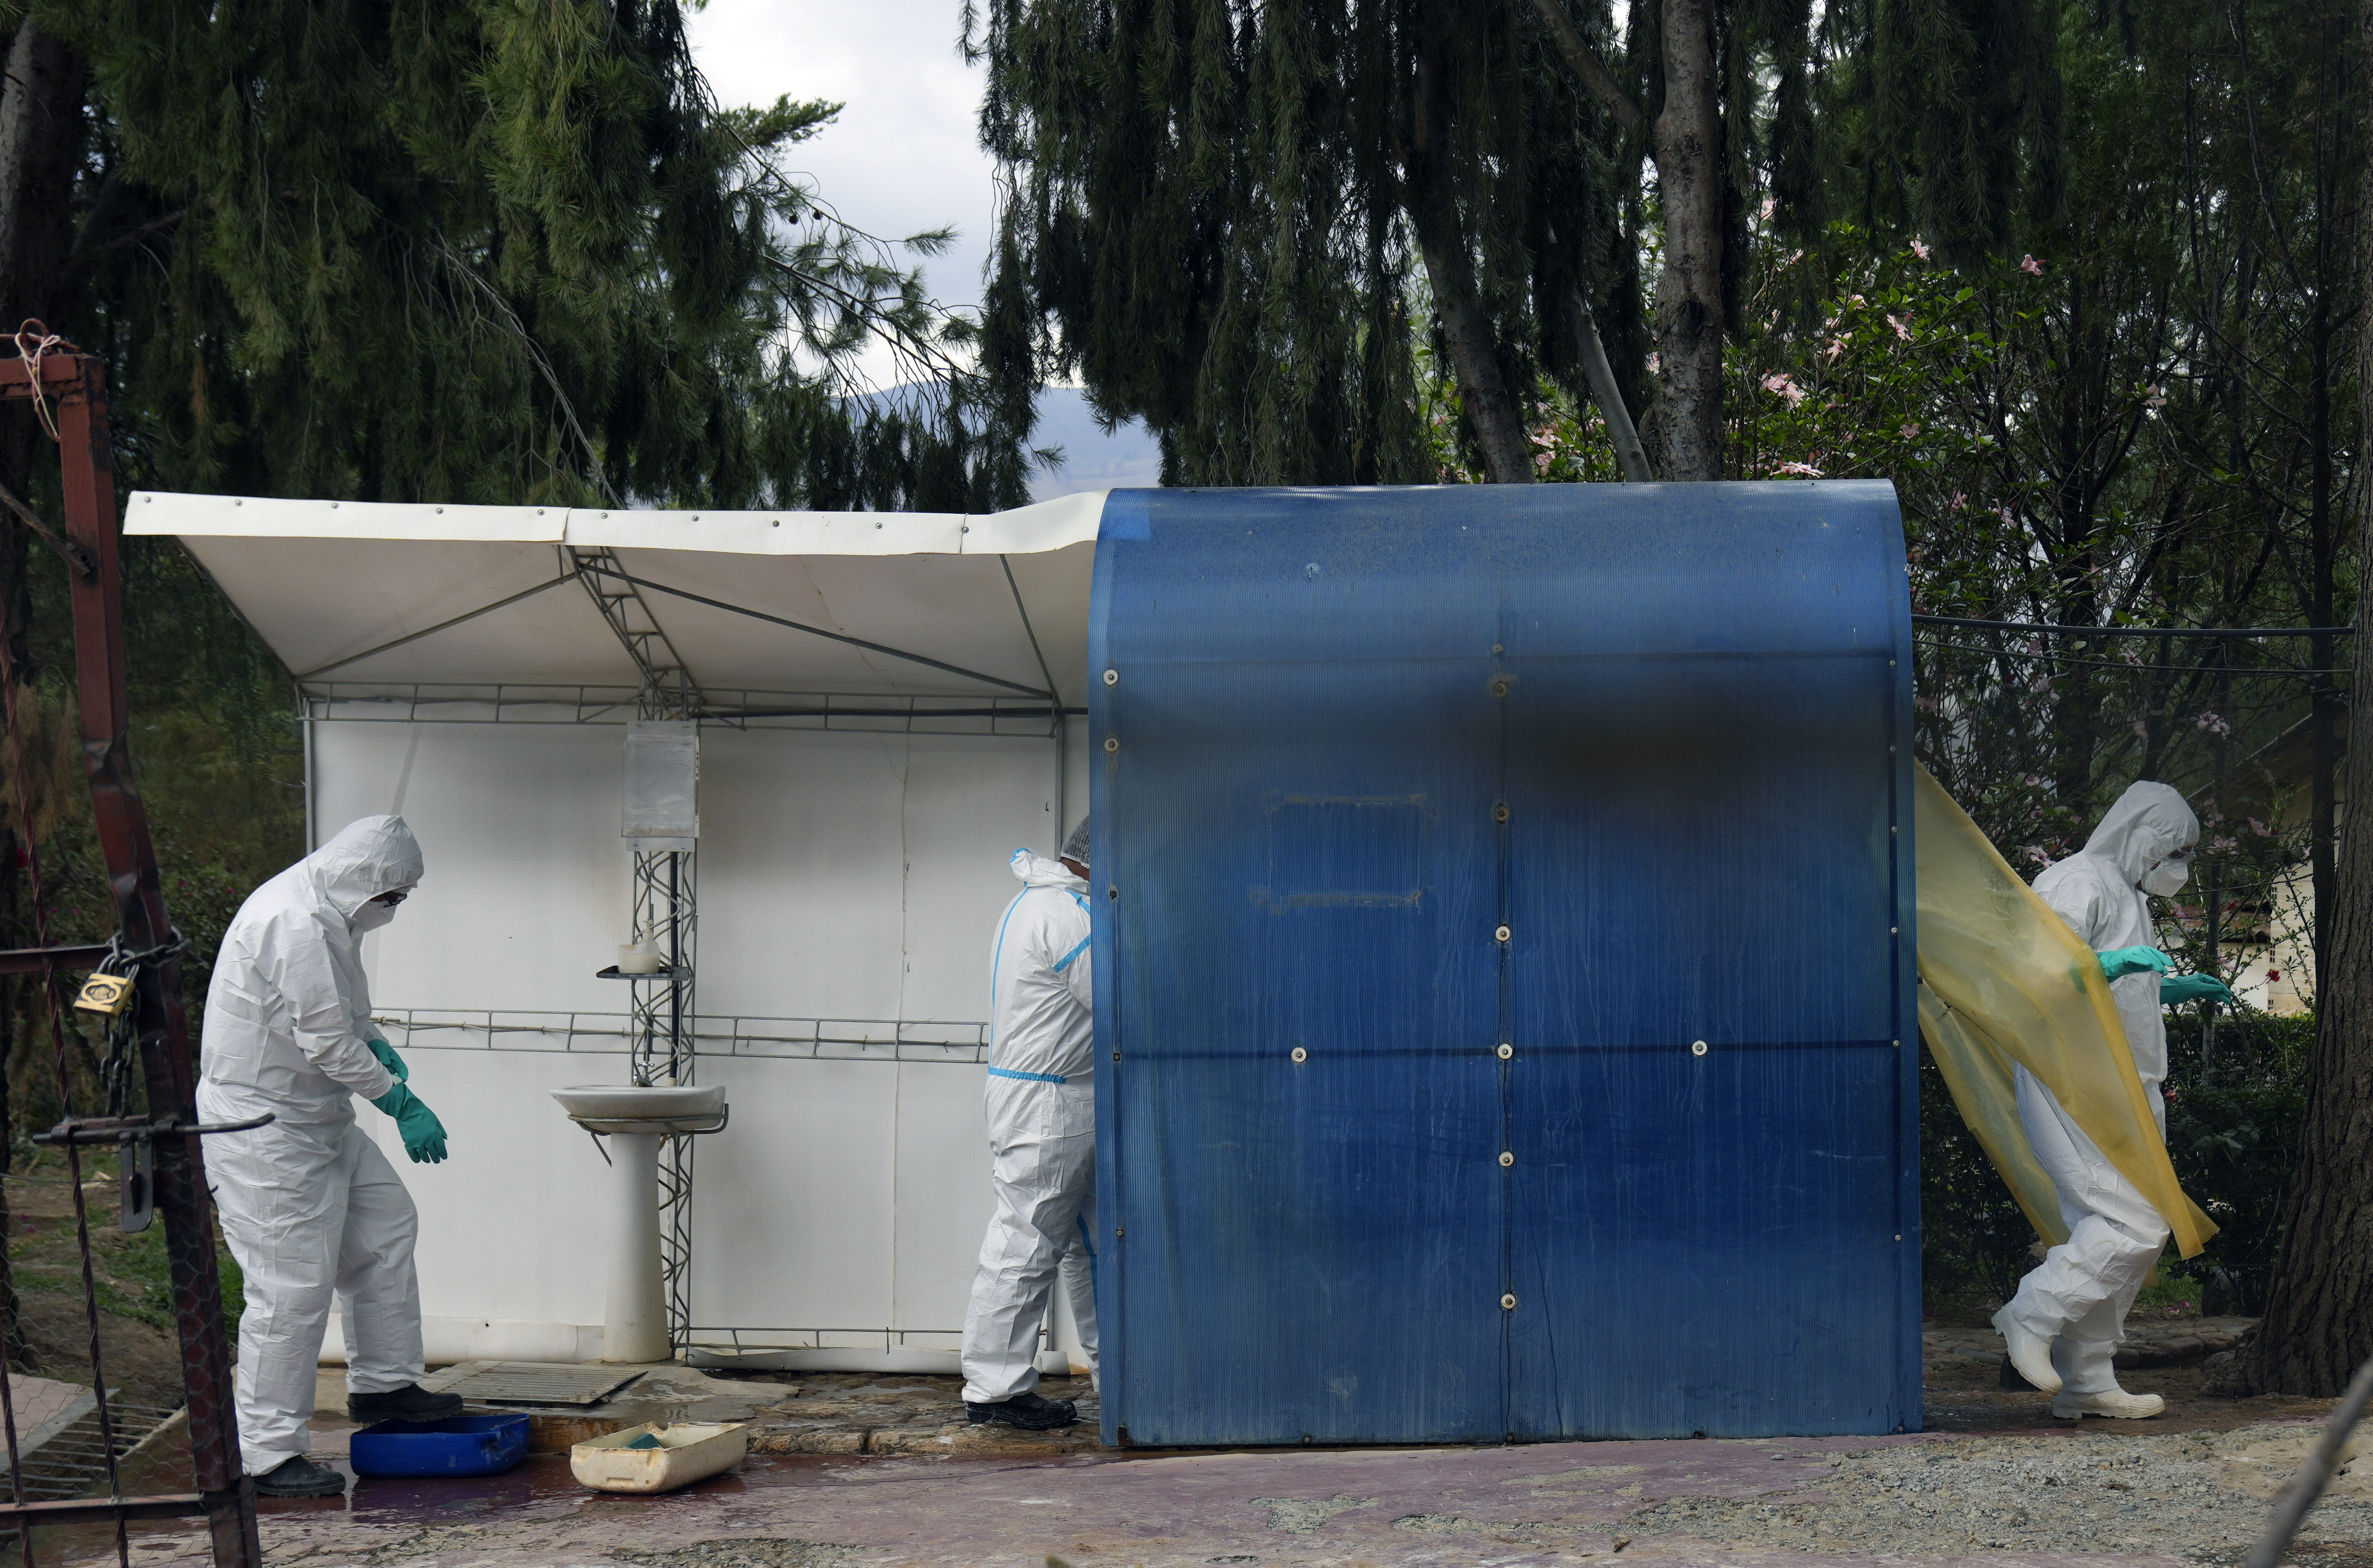 Trabajadores sanitarios, vestidos con equipos de protección, pasan por una cabina de desinfección antes de entrar a una granja de gallinas  afectadas por gripe aviar en Bolivia (AP Foto/Juan Karita)